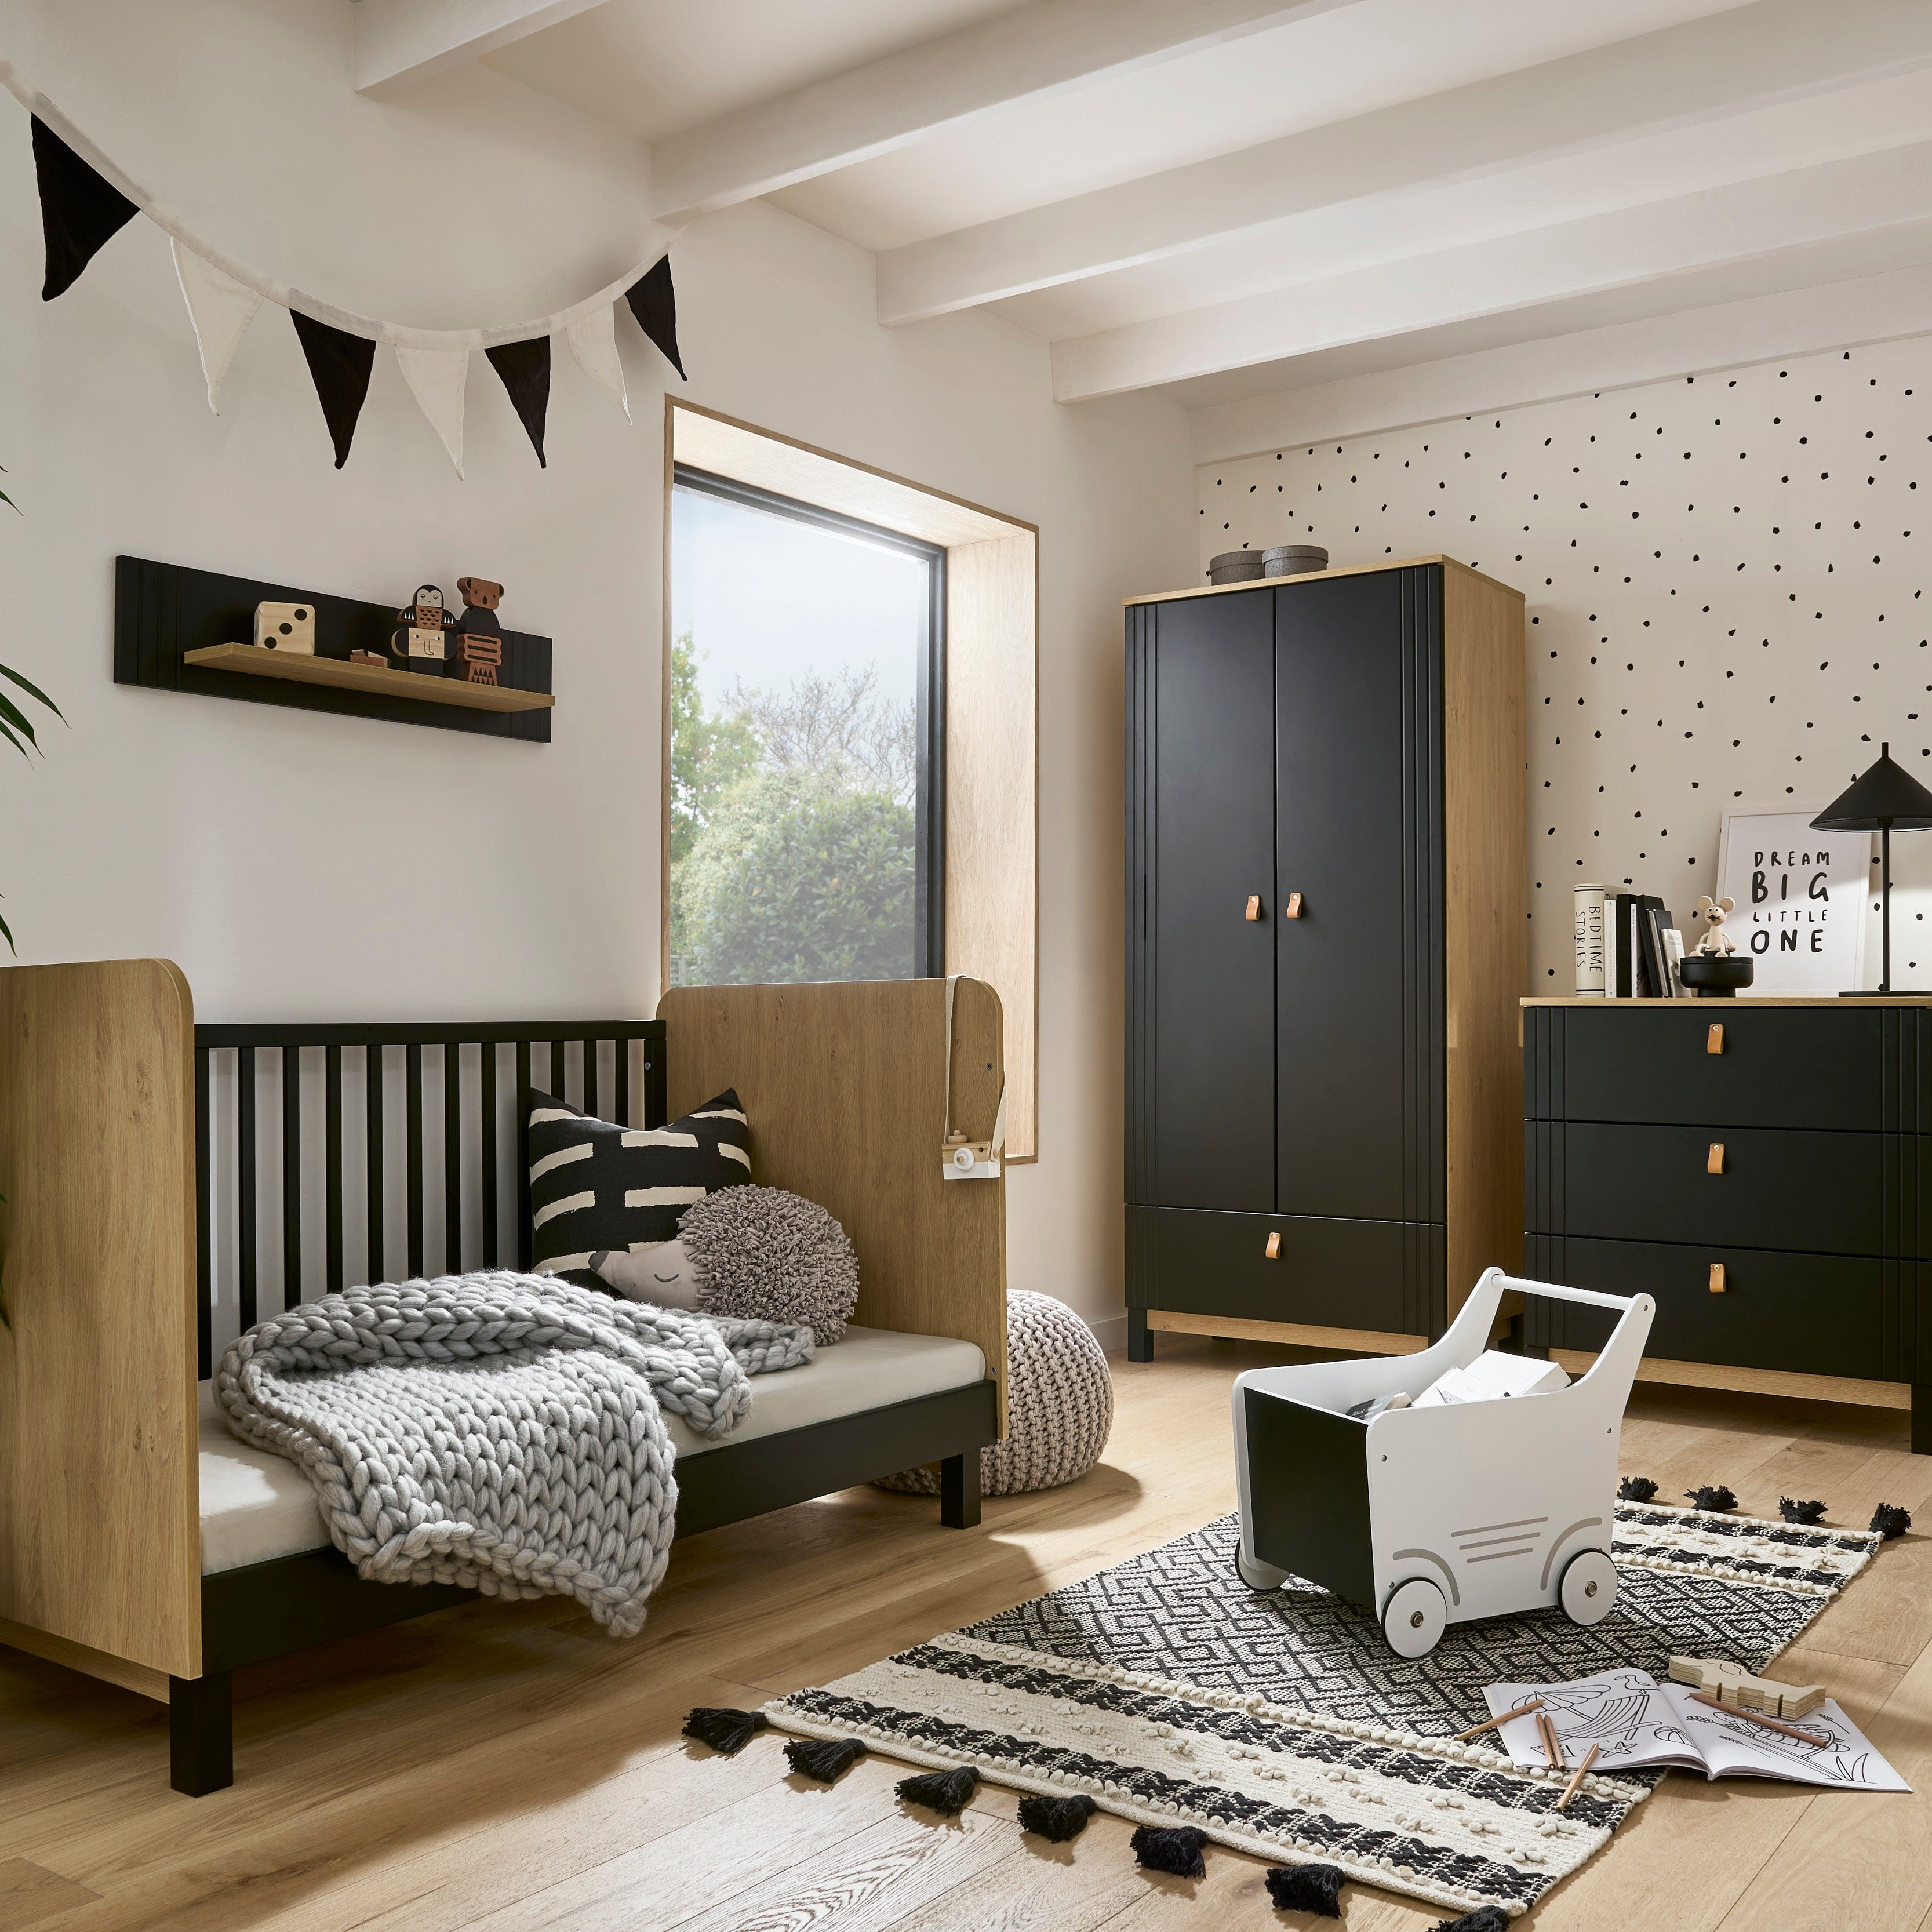 CuddleCo Rafi 4 Piece Room Set in Oak & Black Nursery Room Sets